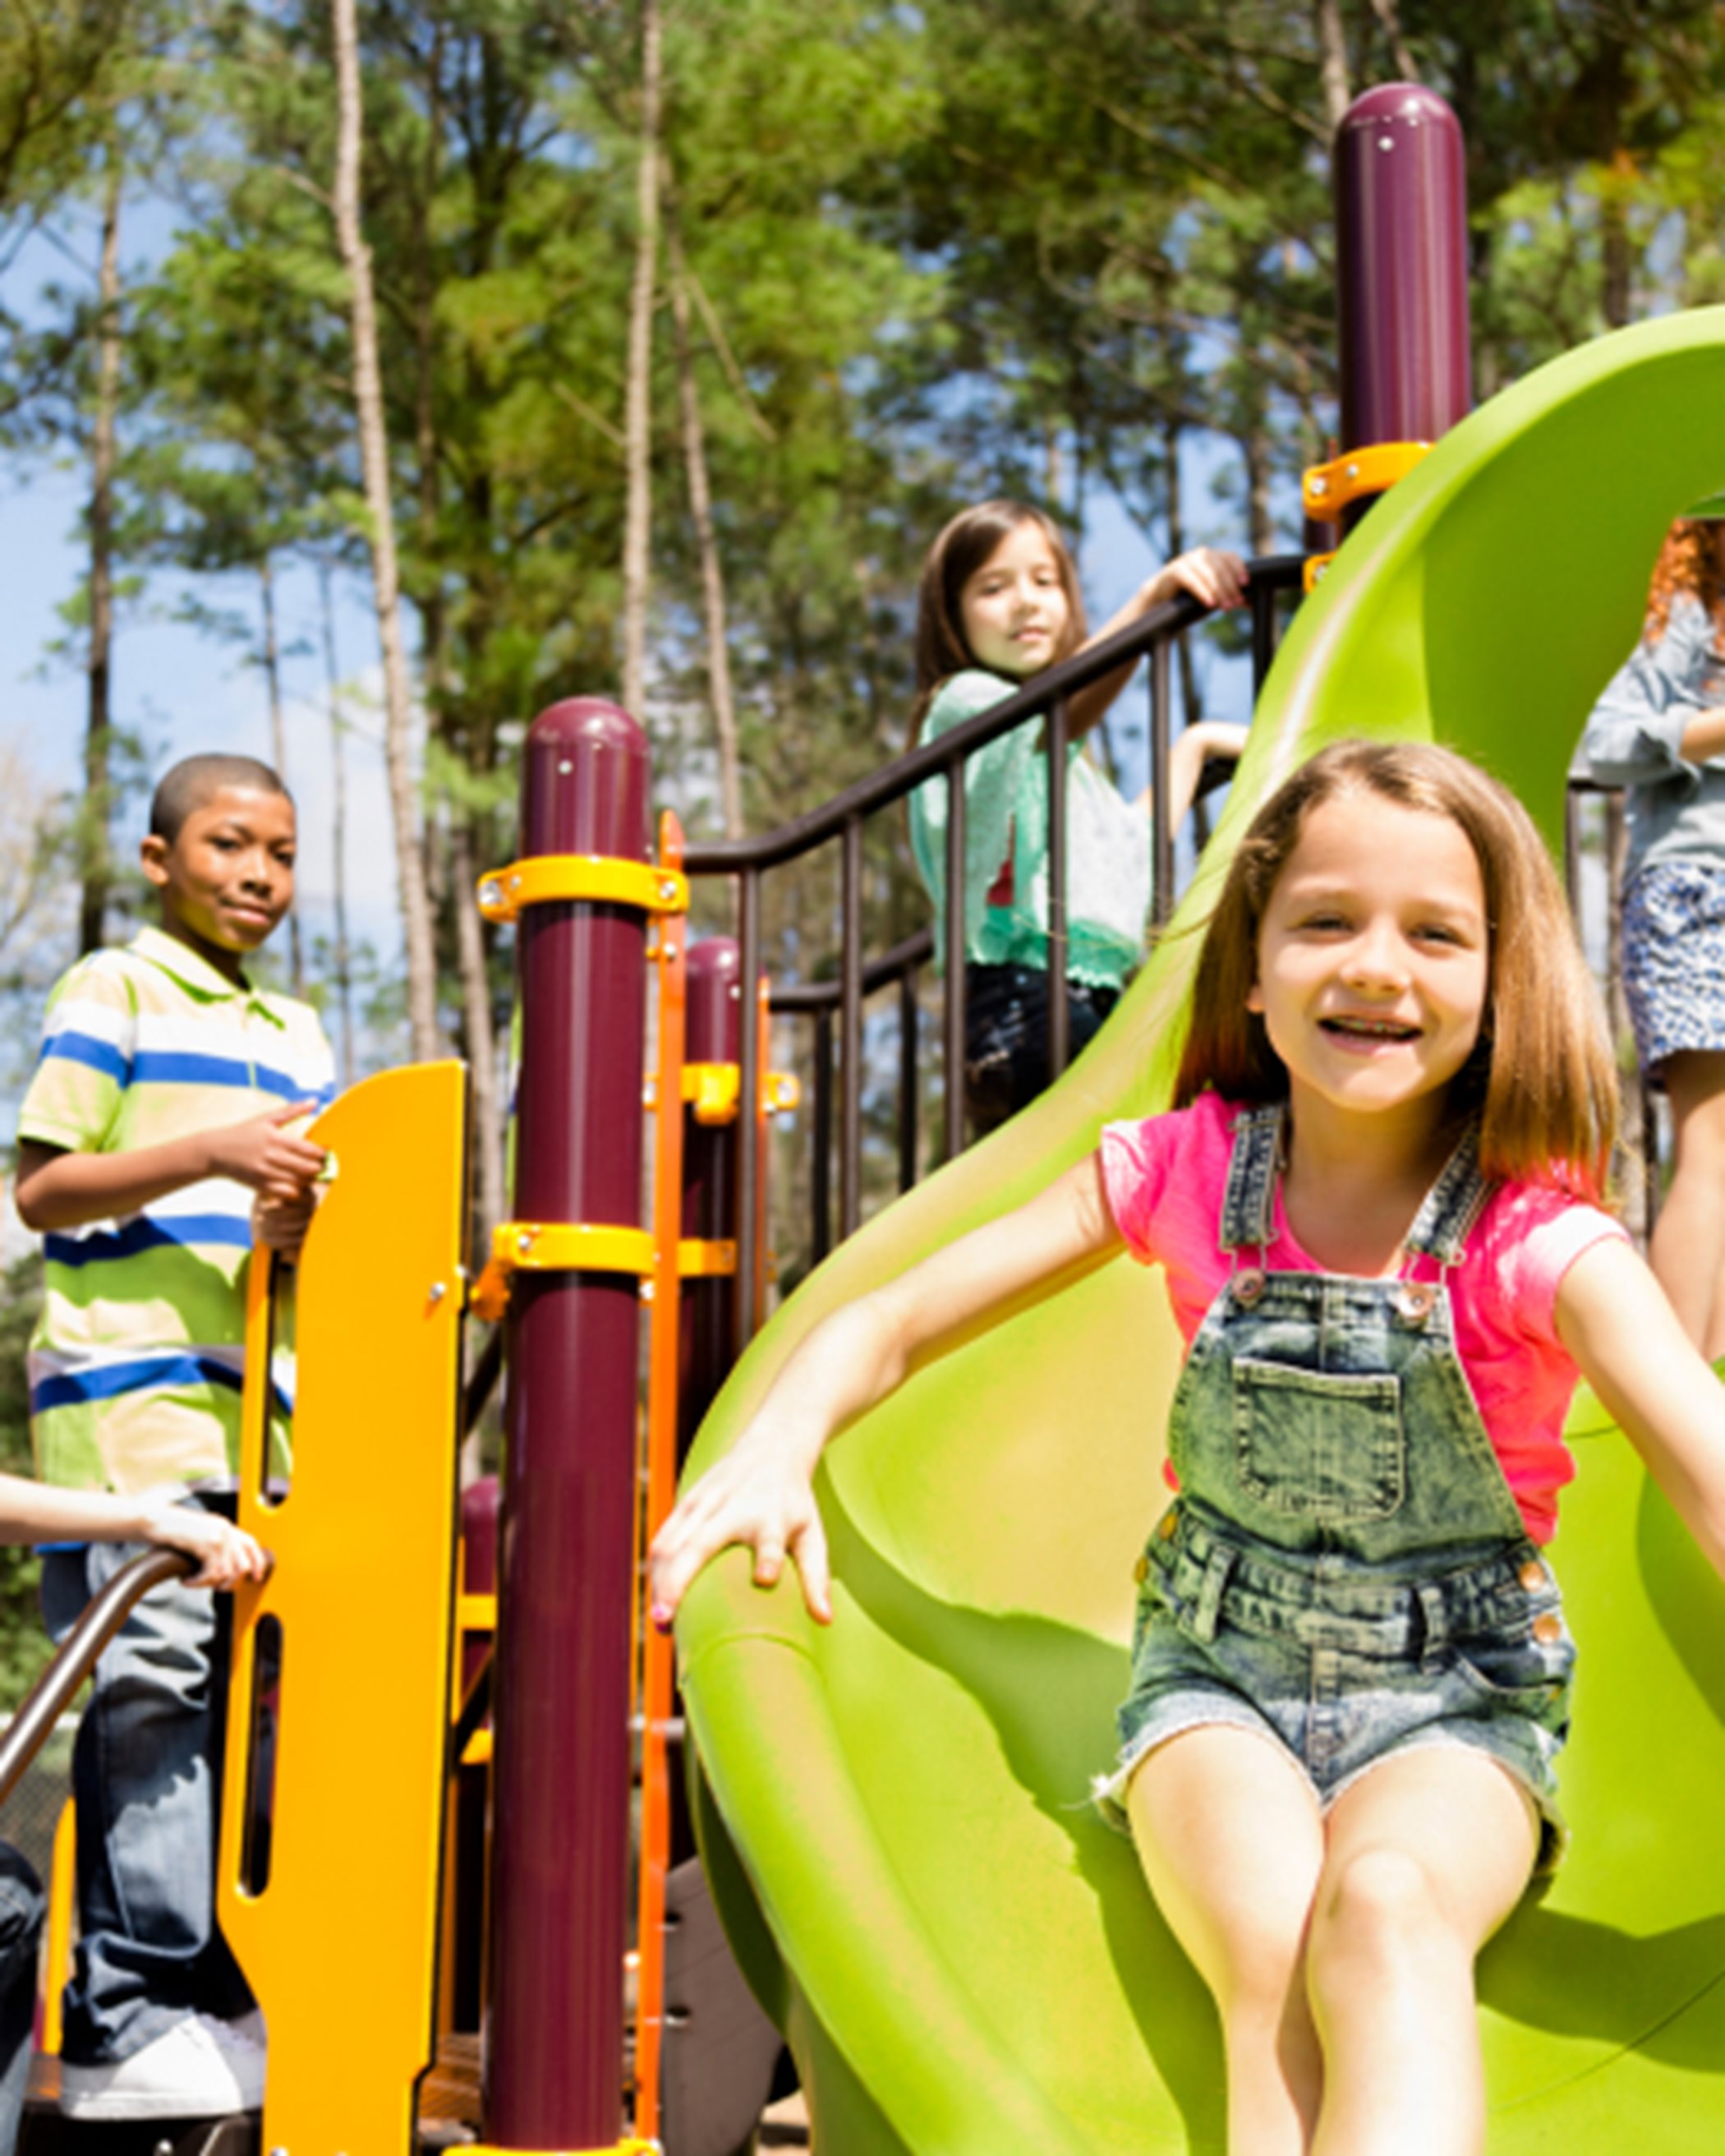 Smiling girl on playground slide